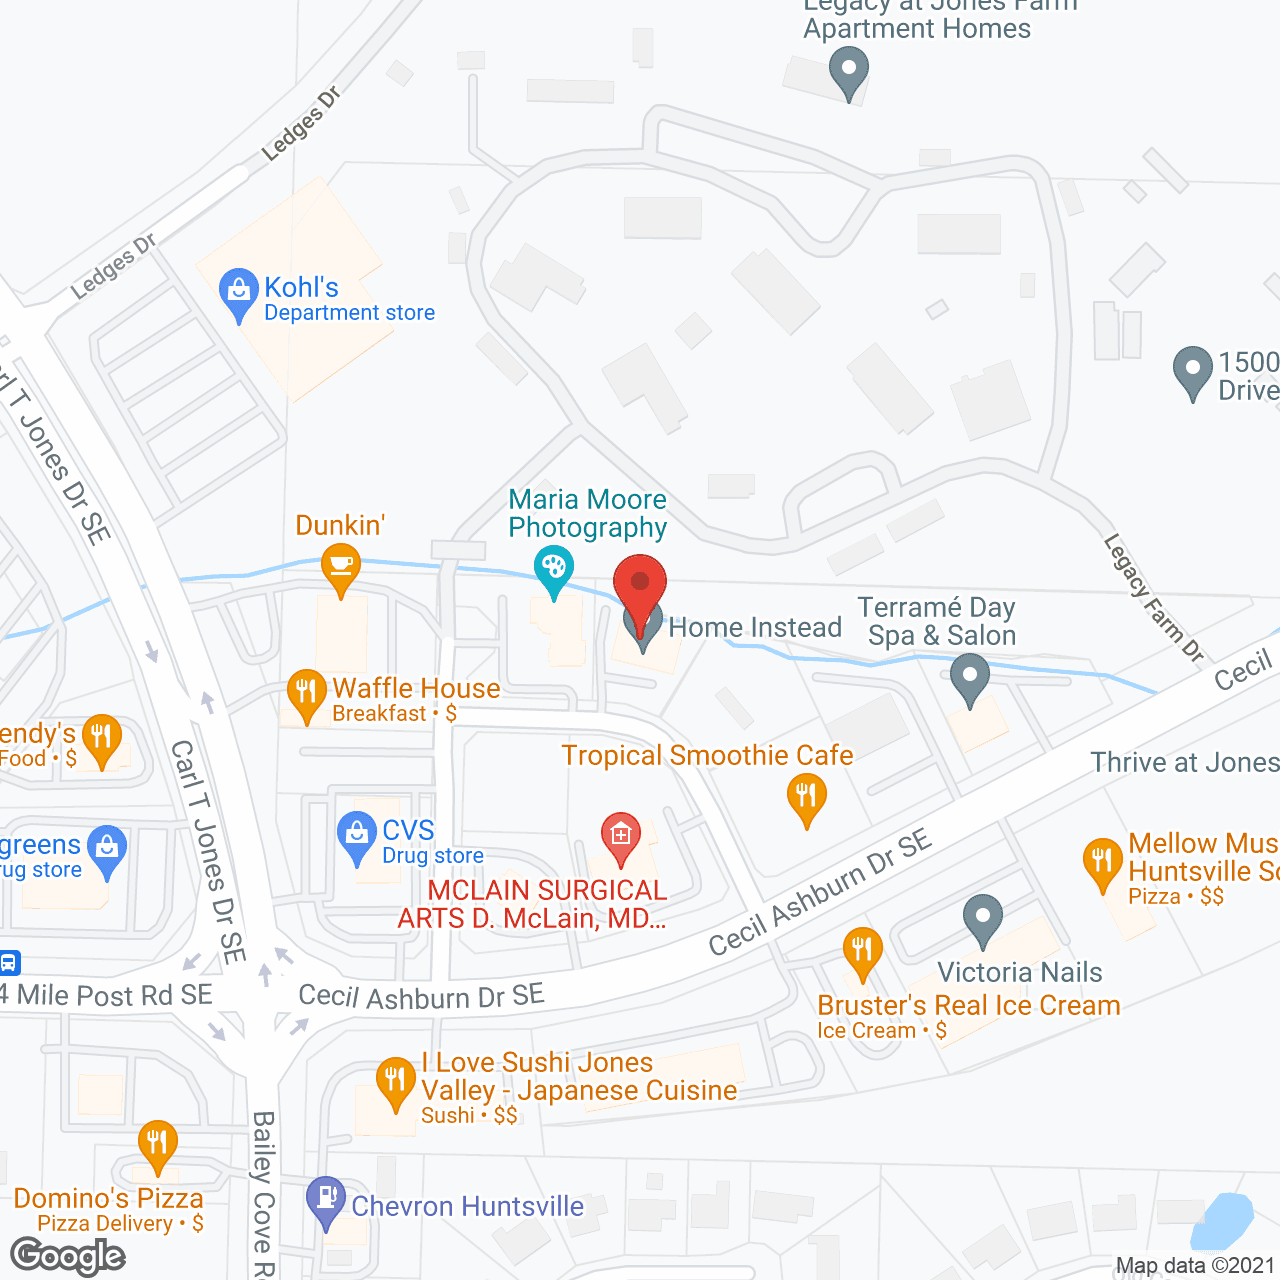 Home Instead - Huntsville, AL in google map